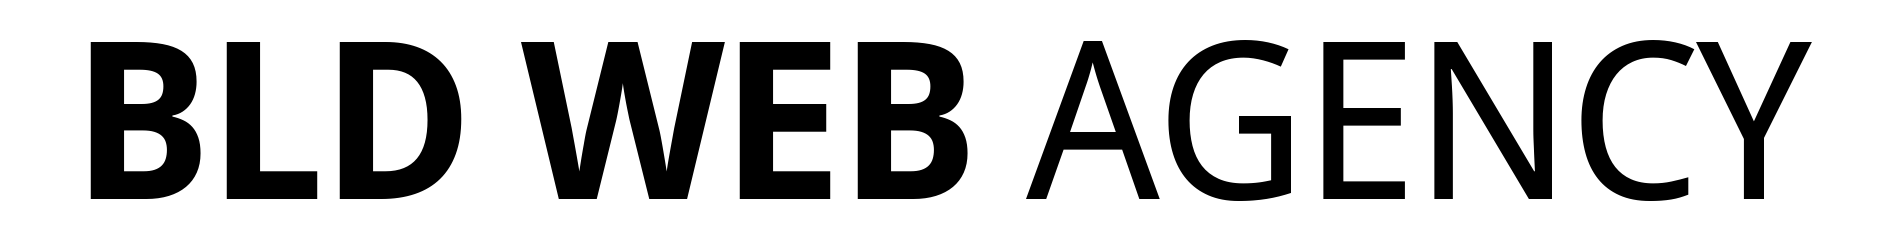 logo-bldwebagency-base-dark